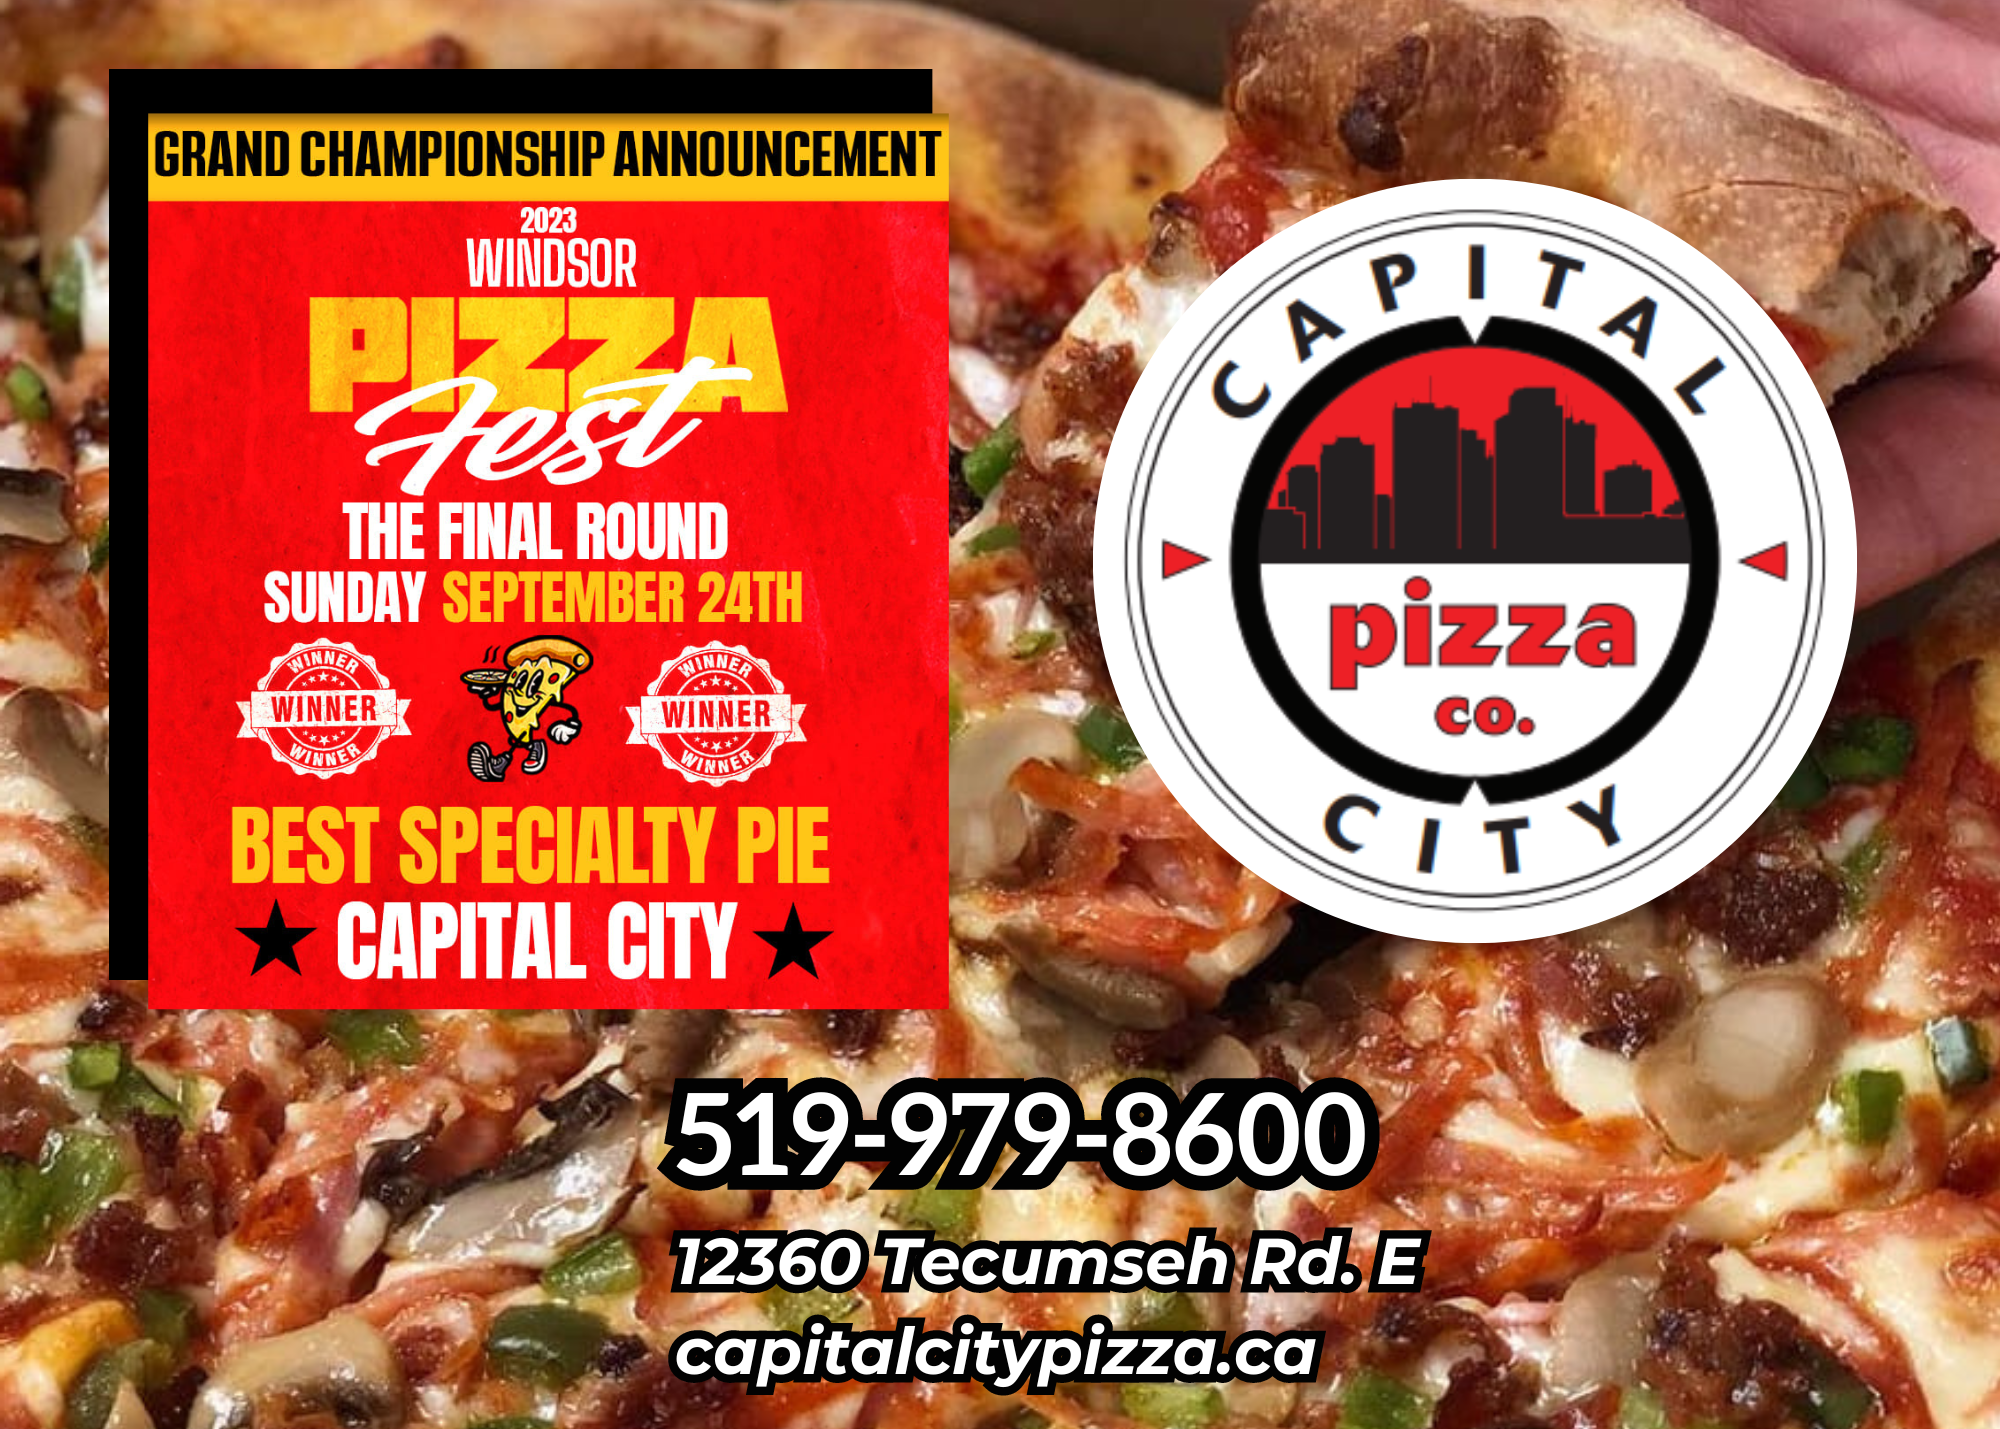 Capital City Pizza Co. Logo 